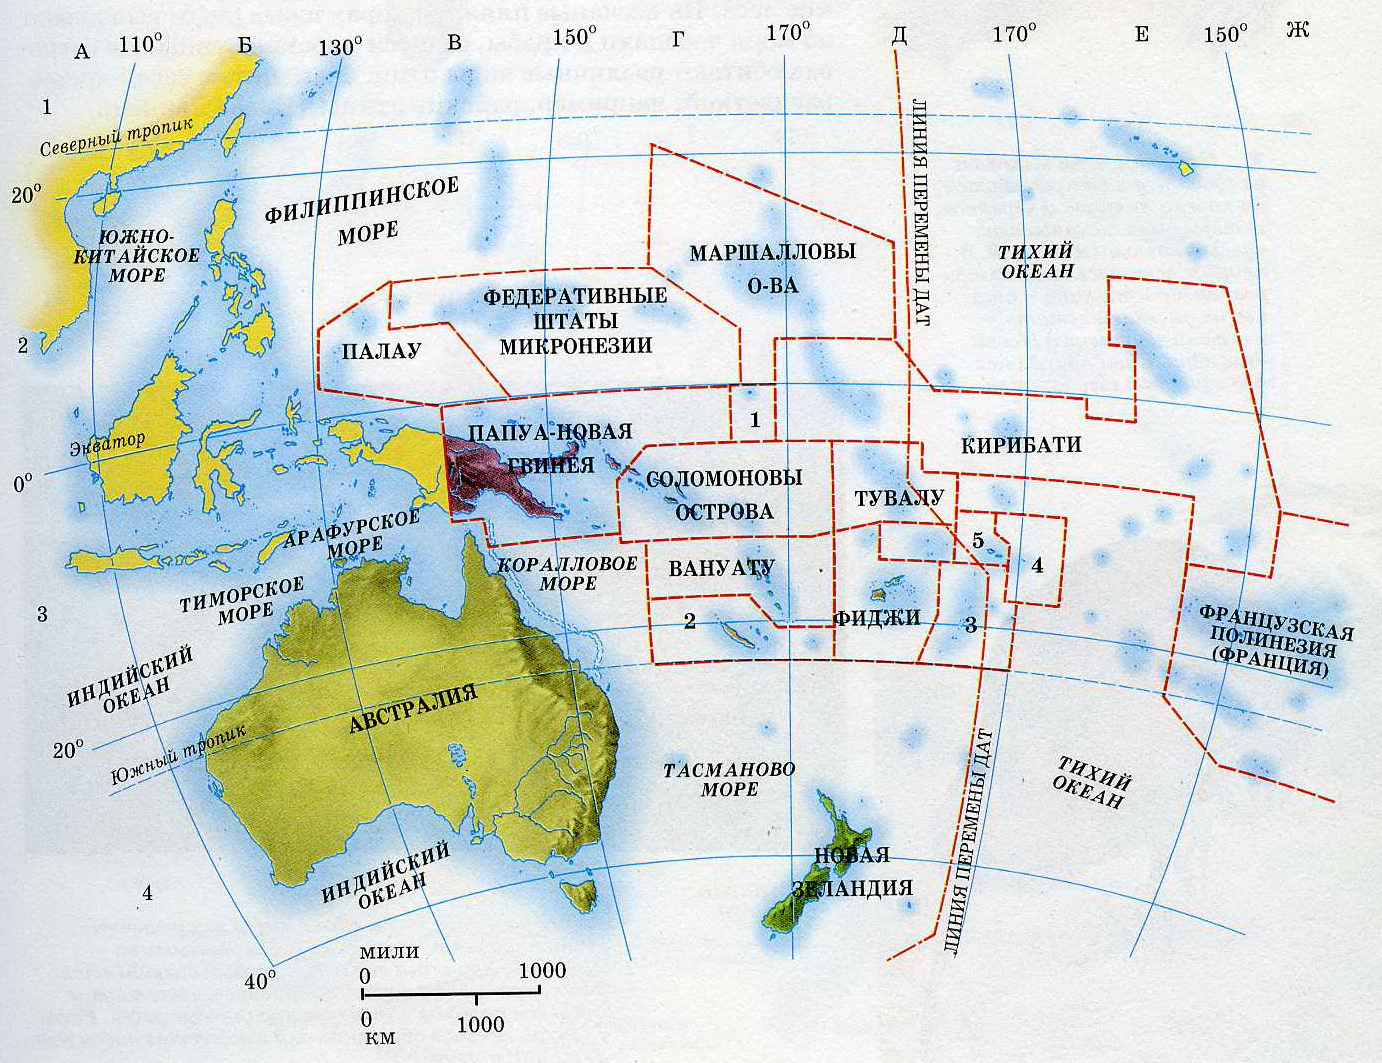 Острова австралии названия. Государства Австралии и Океании на карте. Политическая карта Океании. Границы трех регионов Океании в Австралии на карте. Границы трех регионов Океании в Австралии на контурной карте.